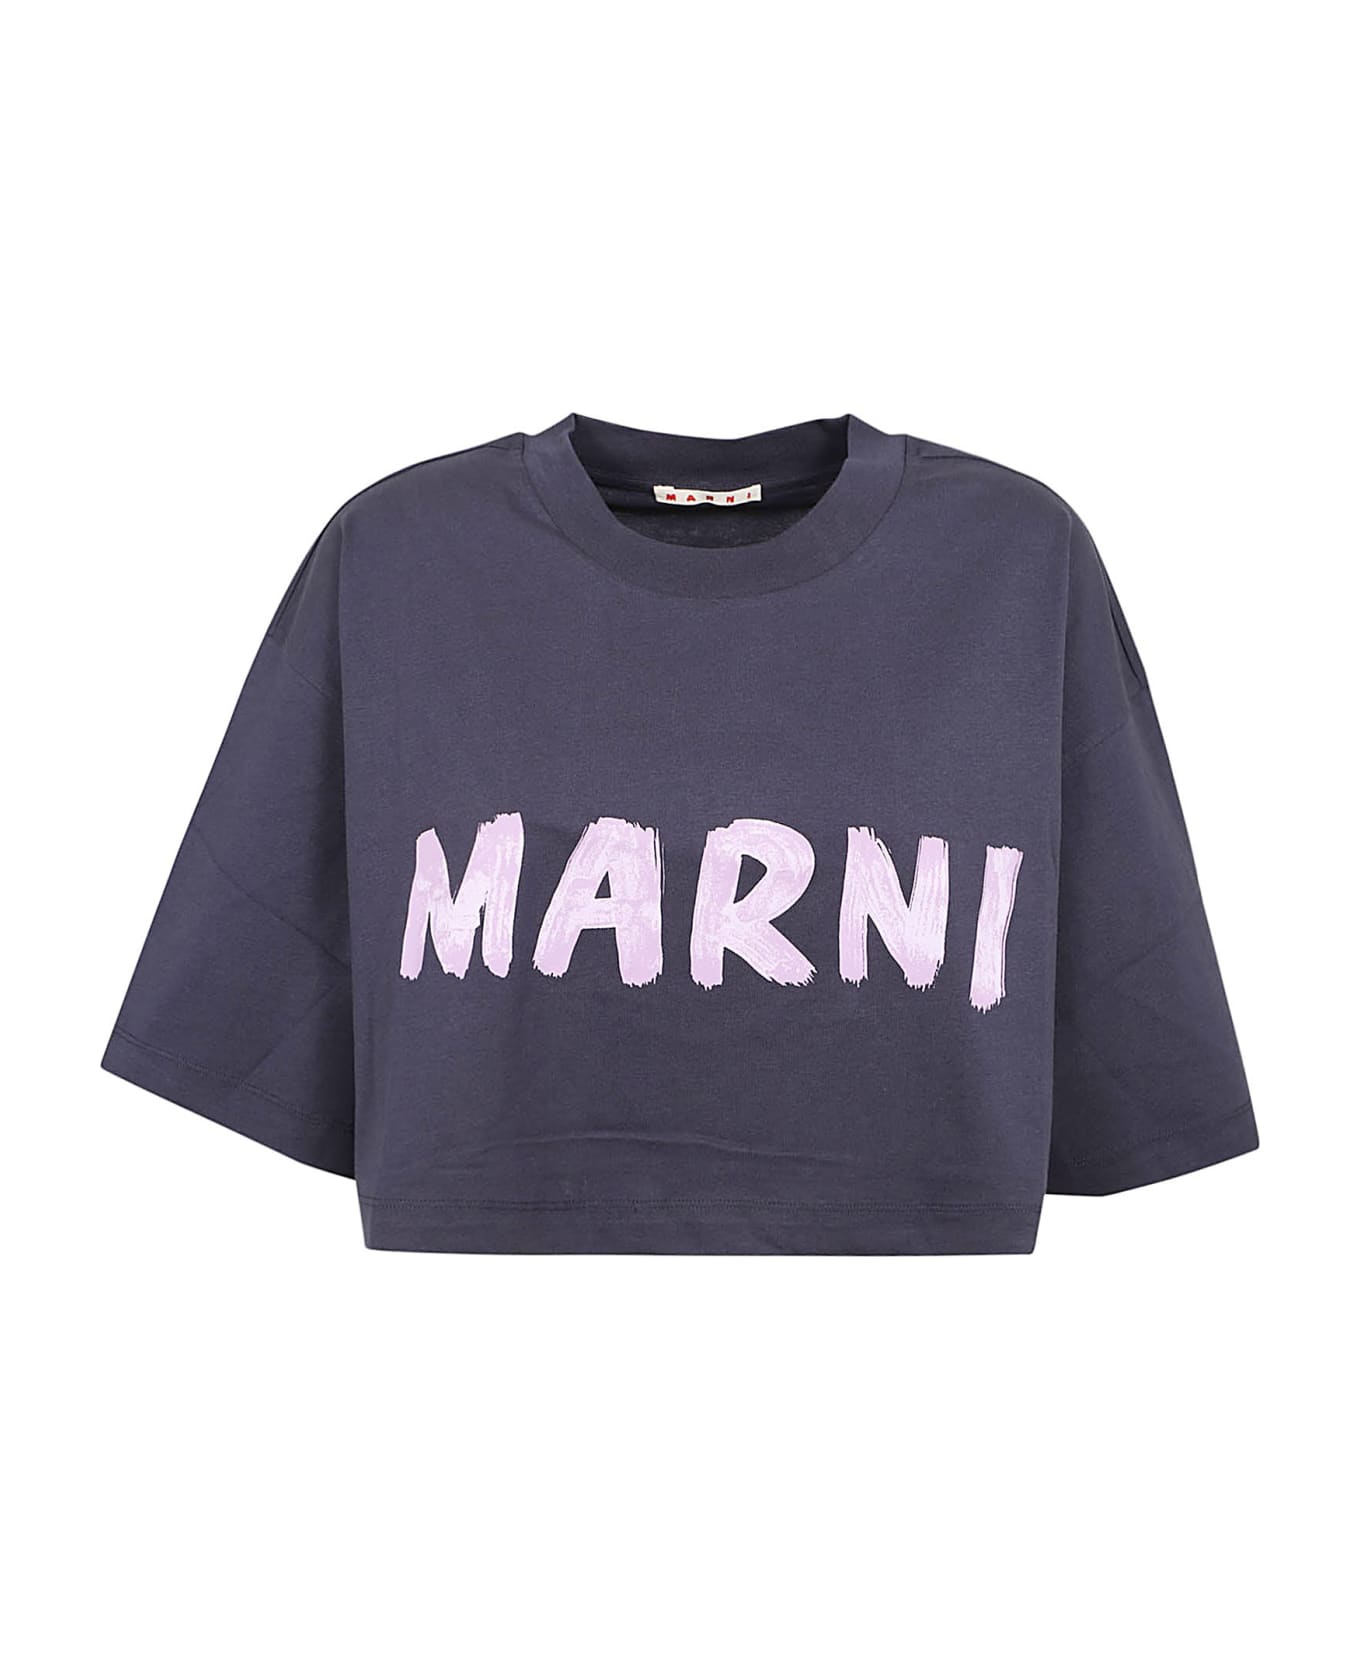 Marni T-shirt - Blublack